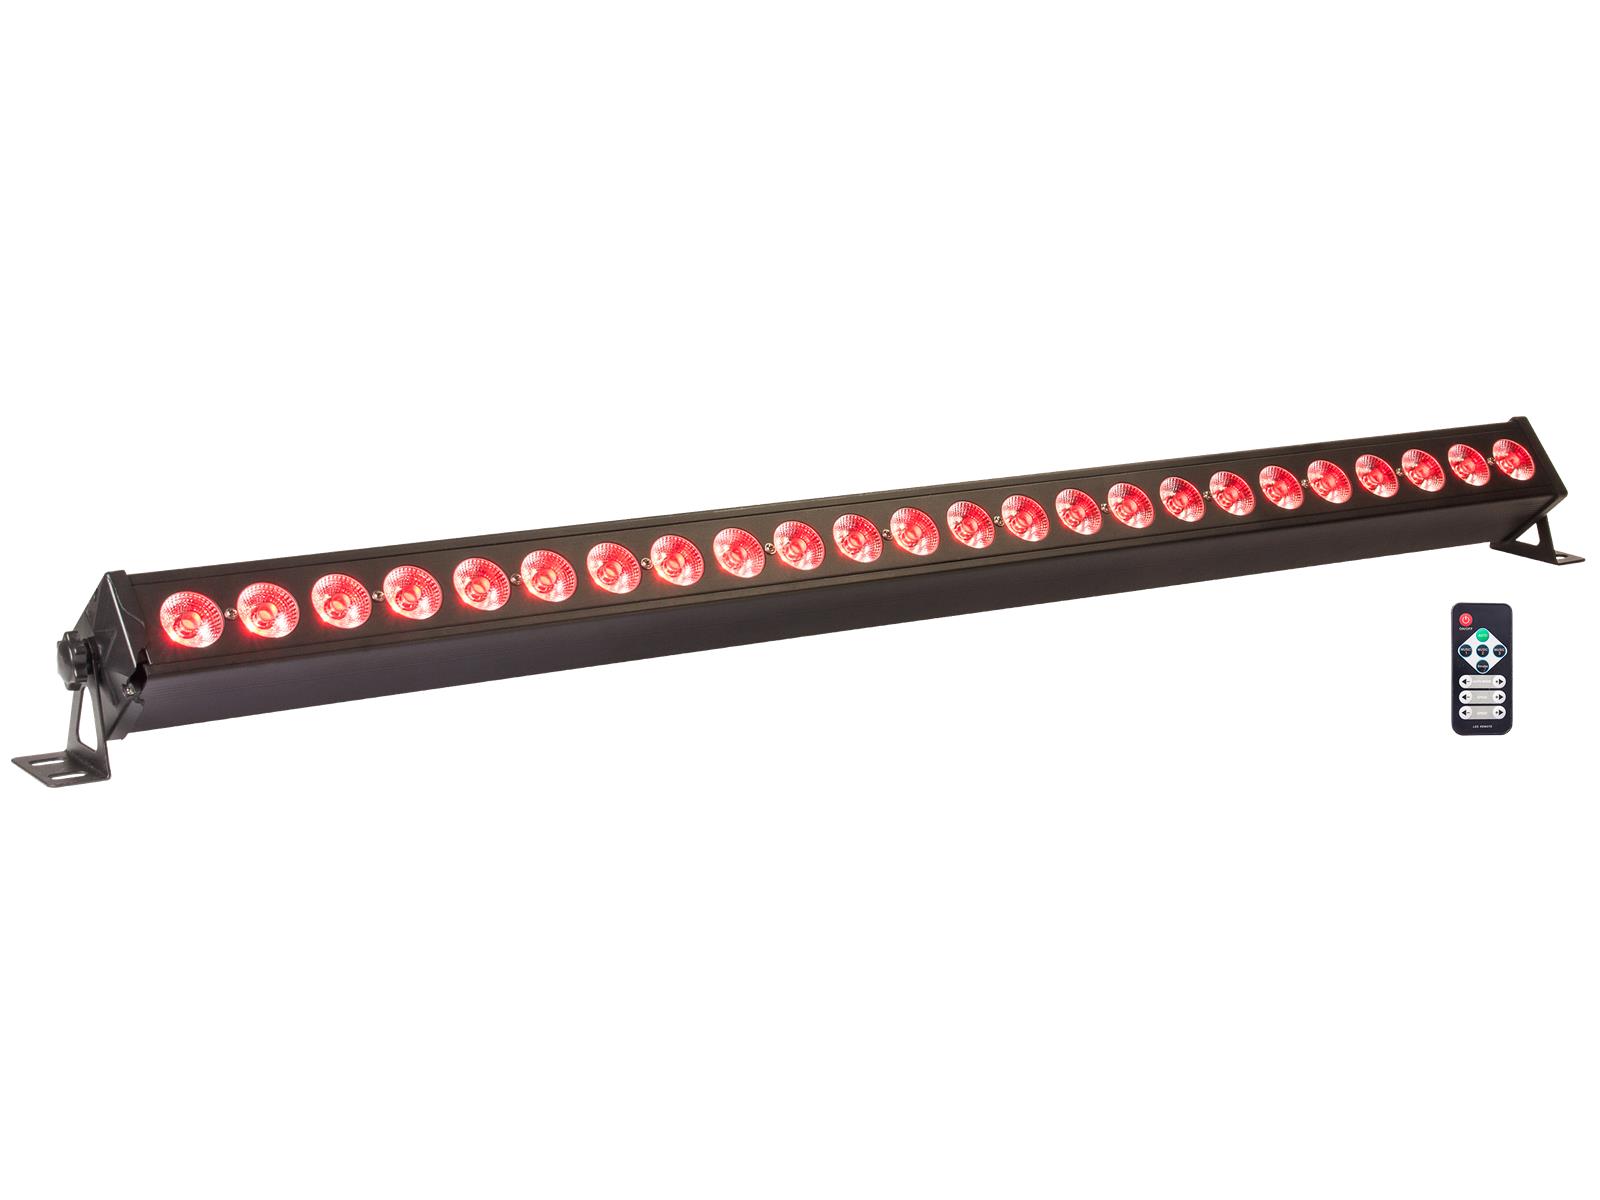 LED-Lichtleiste IBIZA ''LEDBAR24-RC'' 24x 4W RGB+W LEDs, DMX, Fernbedienung